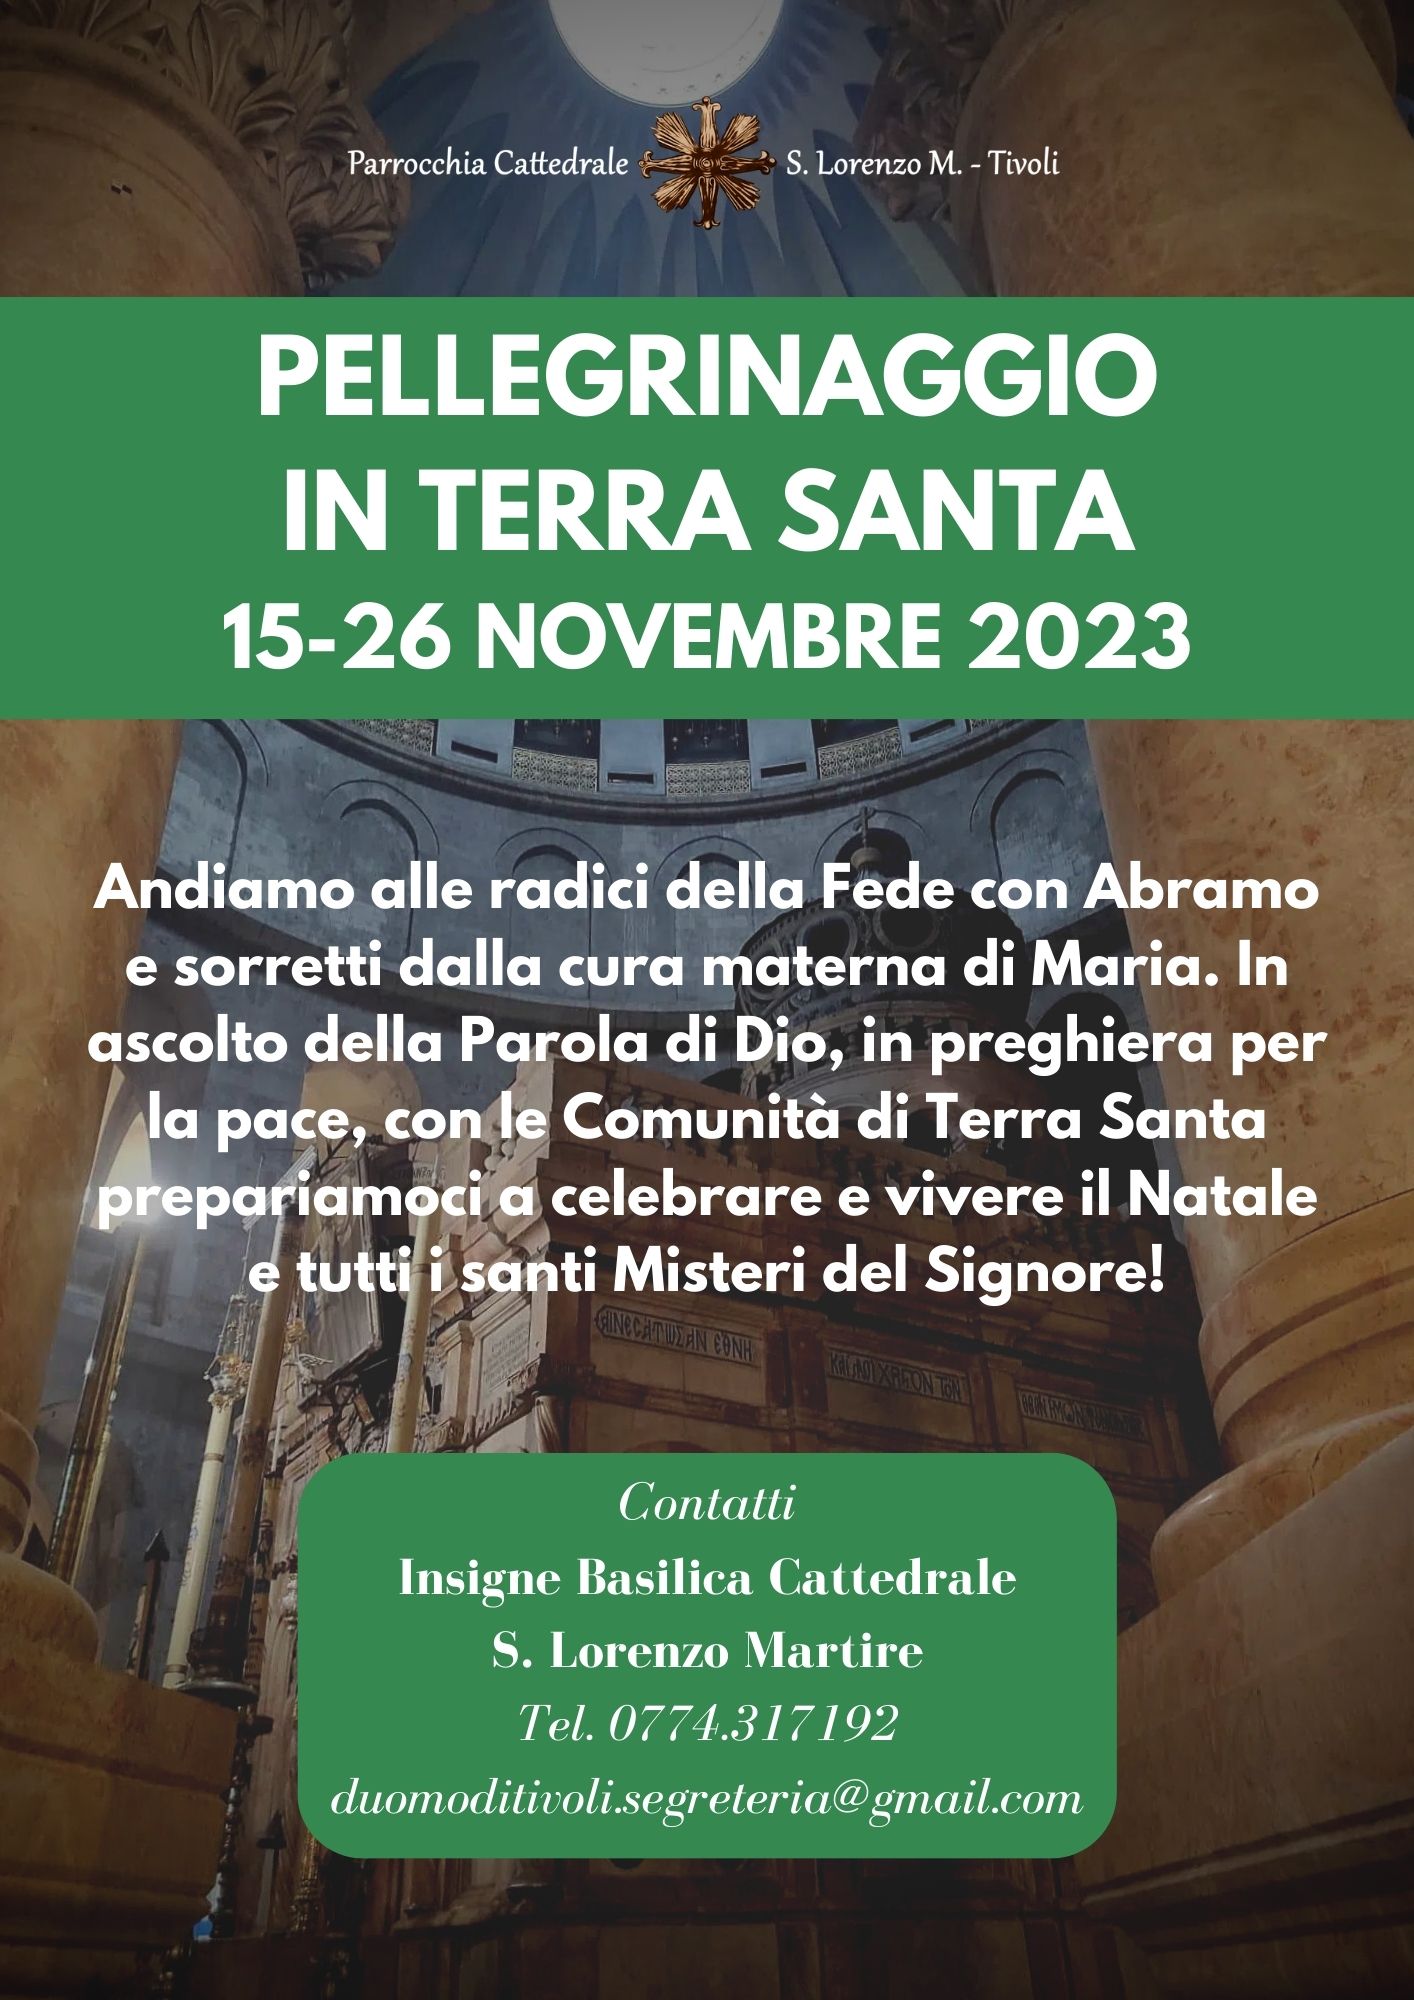 Pellegrinaggio in Terra Santa novembre 2023. Programma